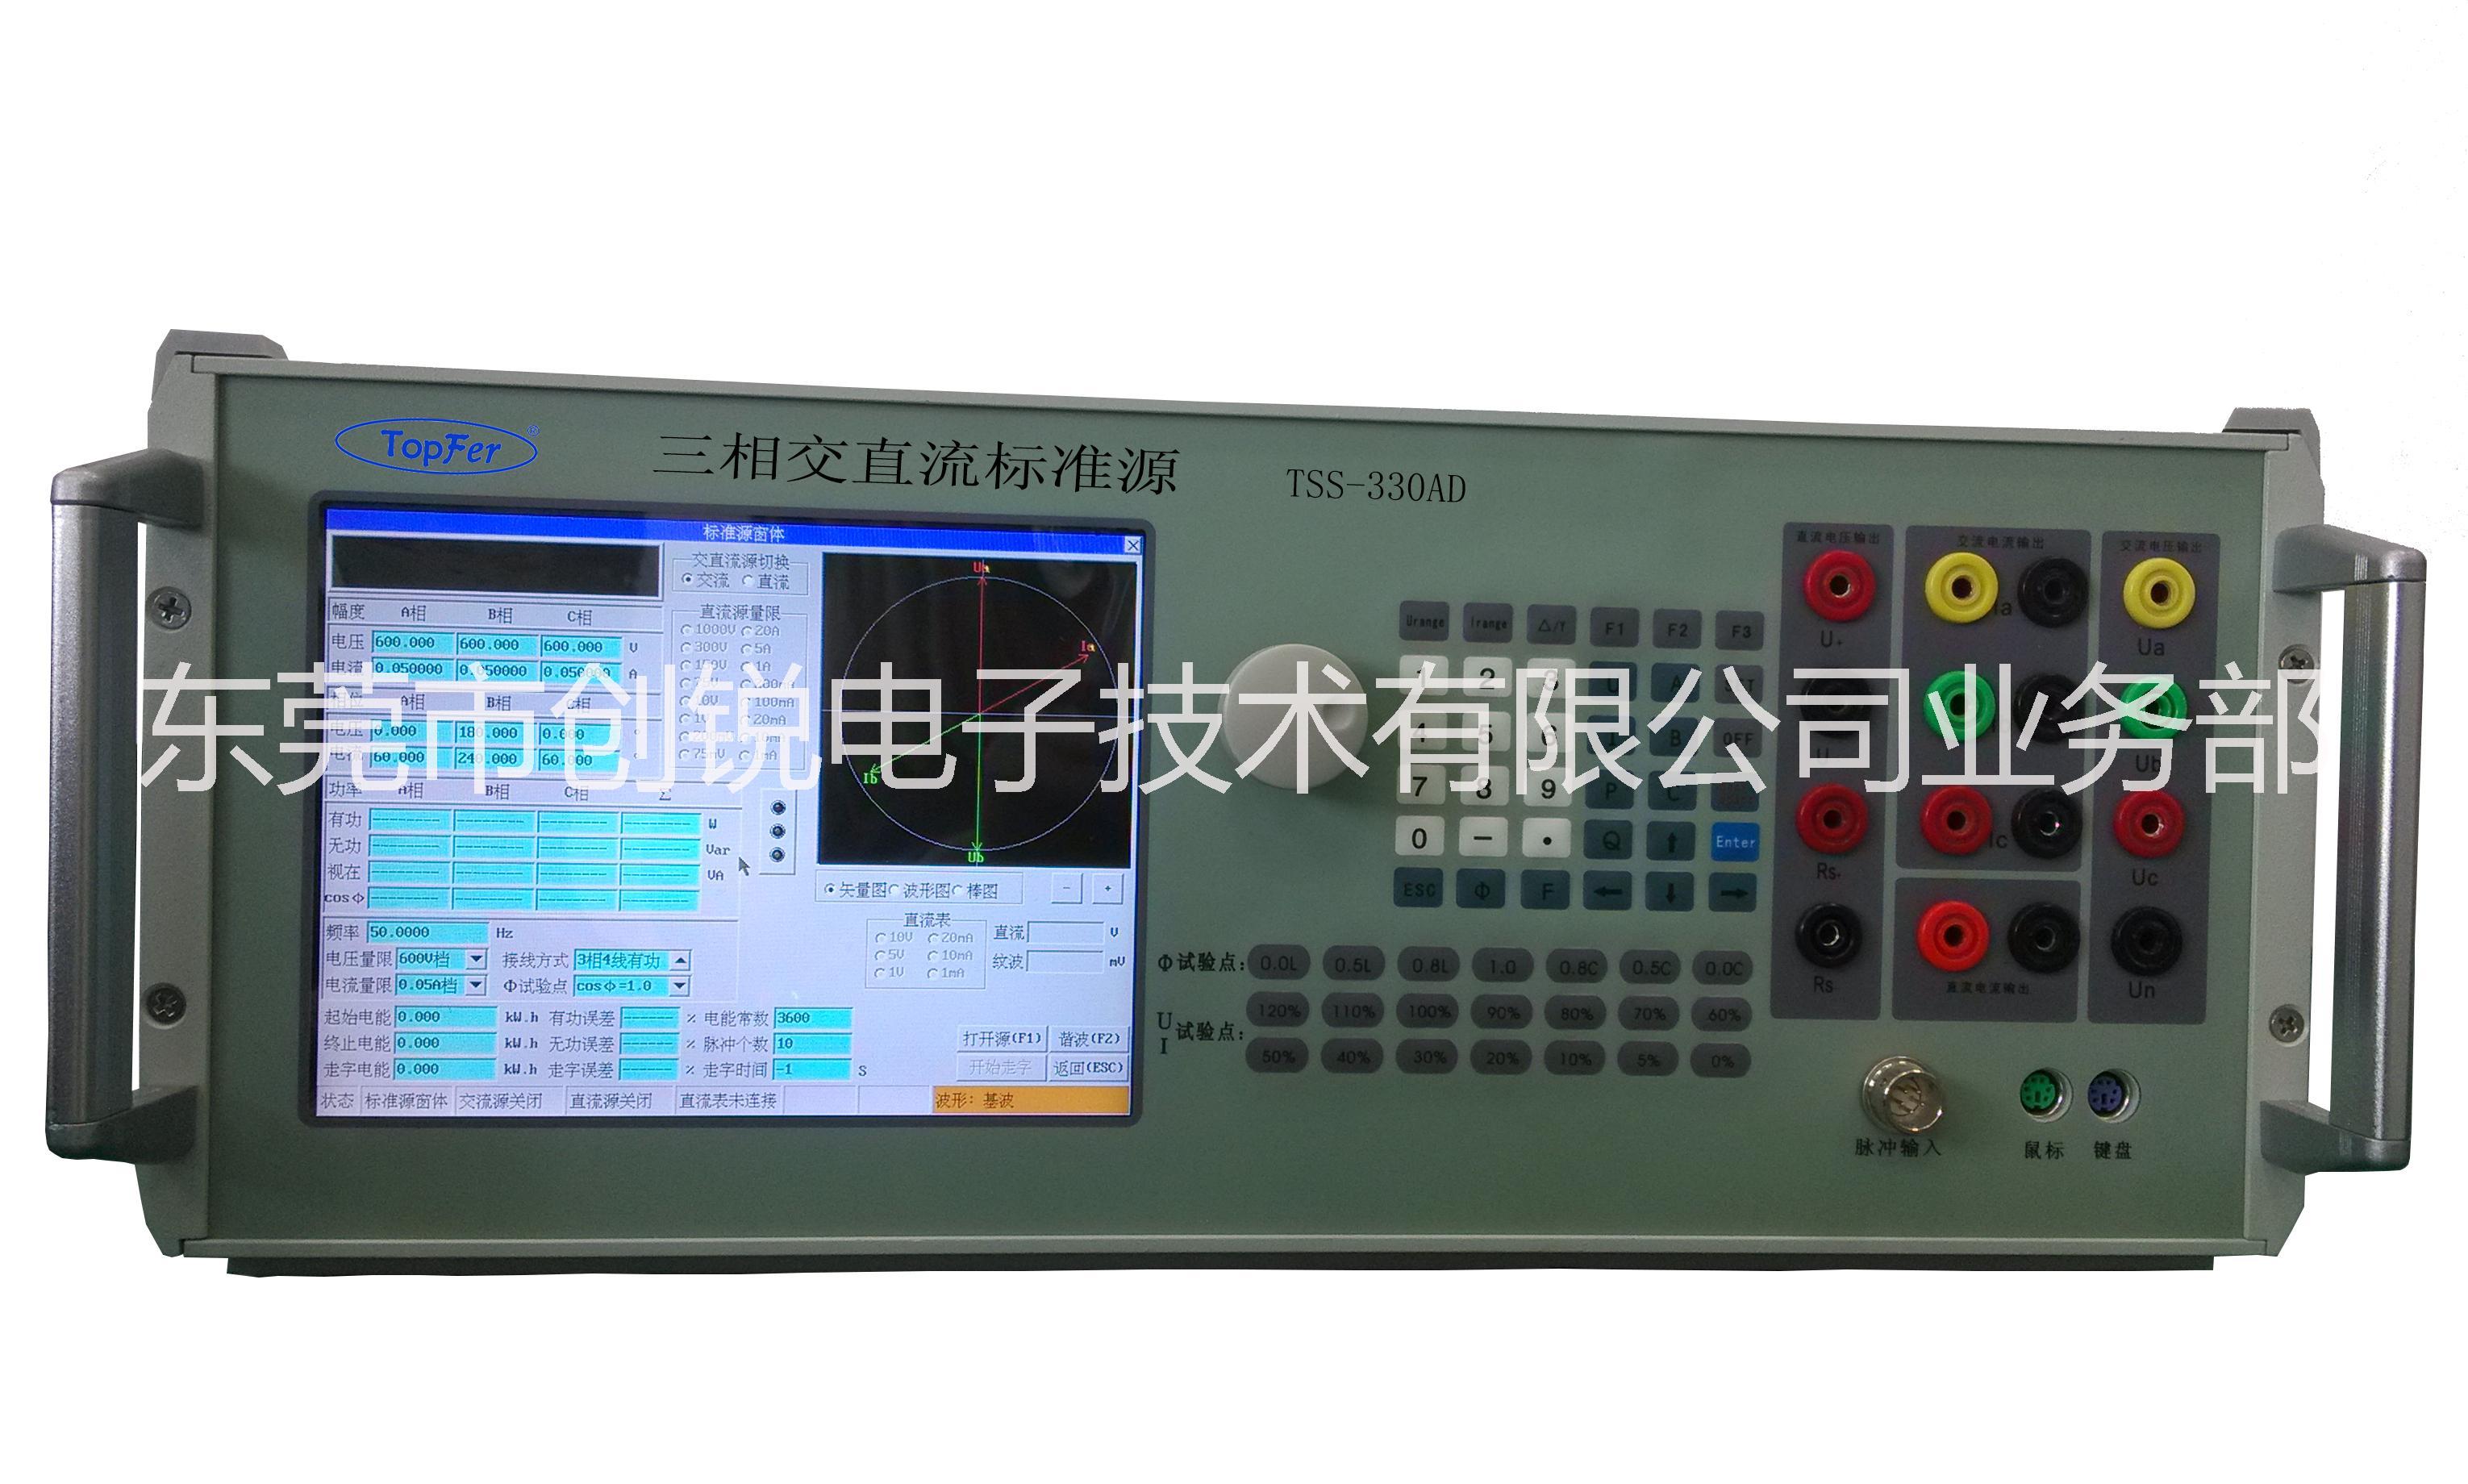 供应用于检定交流采样的TSS-330ADH三相交直流谐波标准源图片